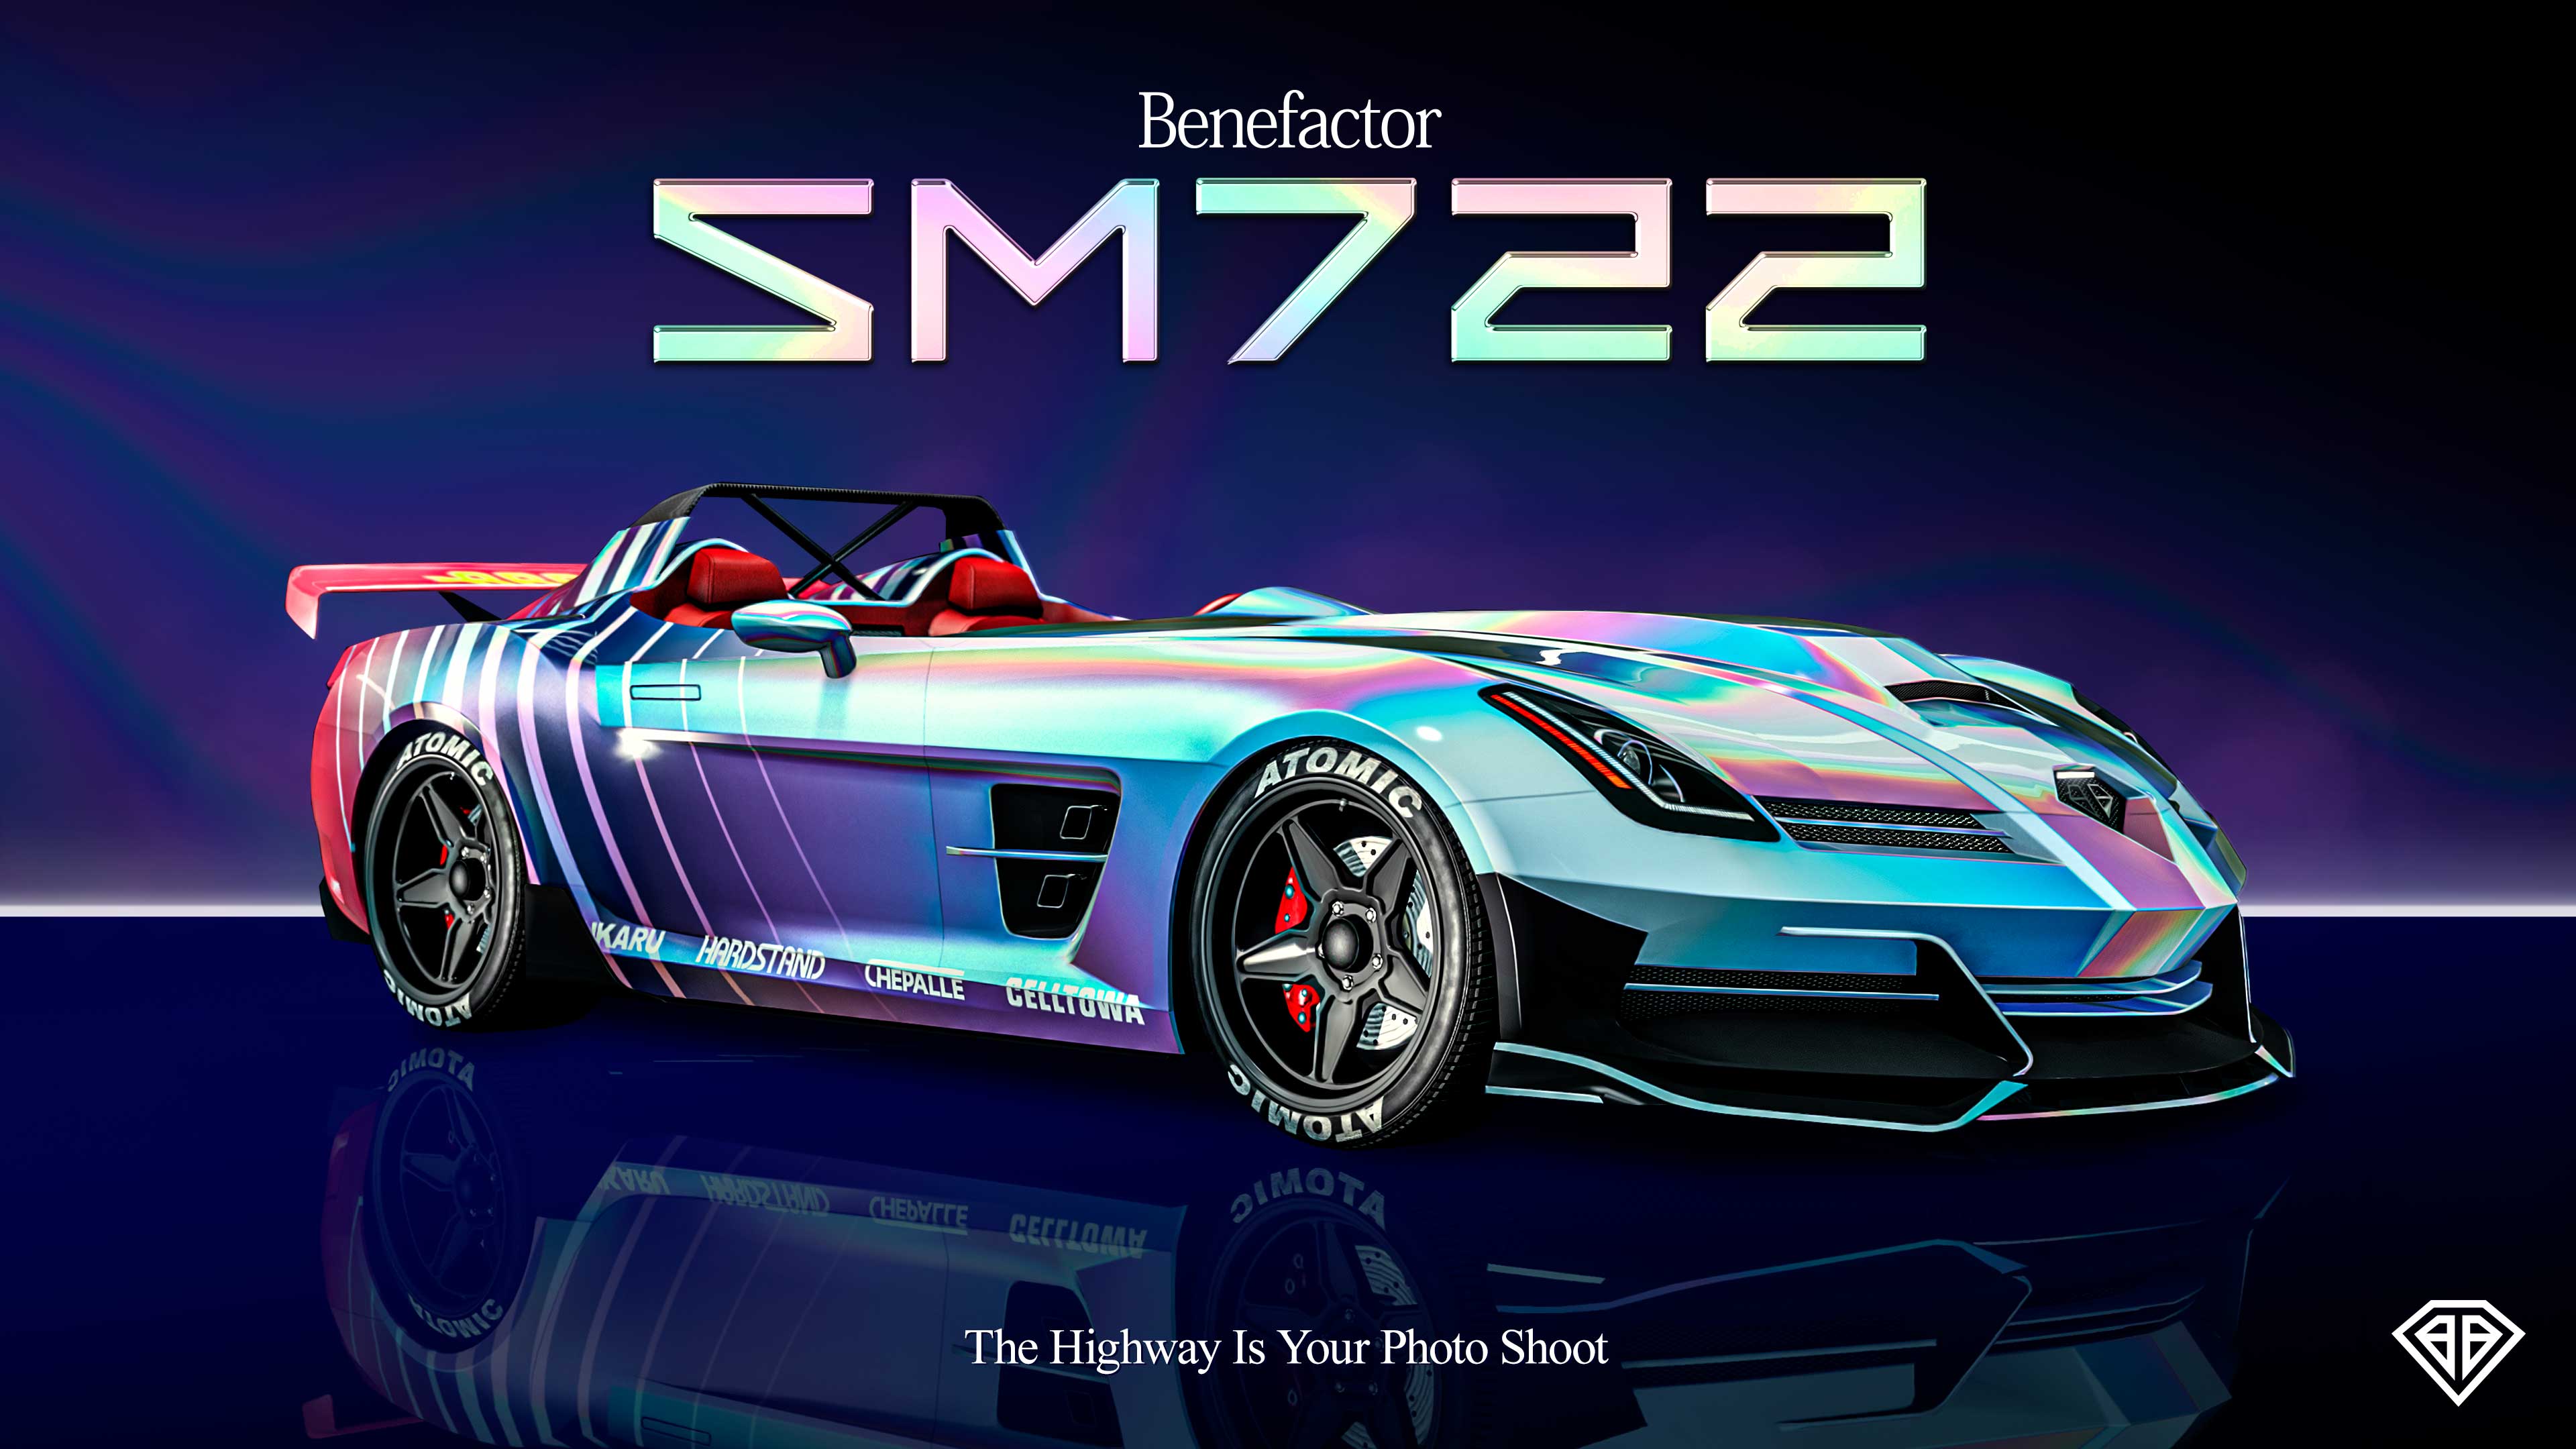 《侠盗猎车手5》gta5隆重介绍贝飞特 SM722 跑车现已开放顶级豪华车业和豪华汽车展厅